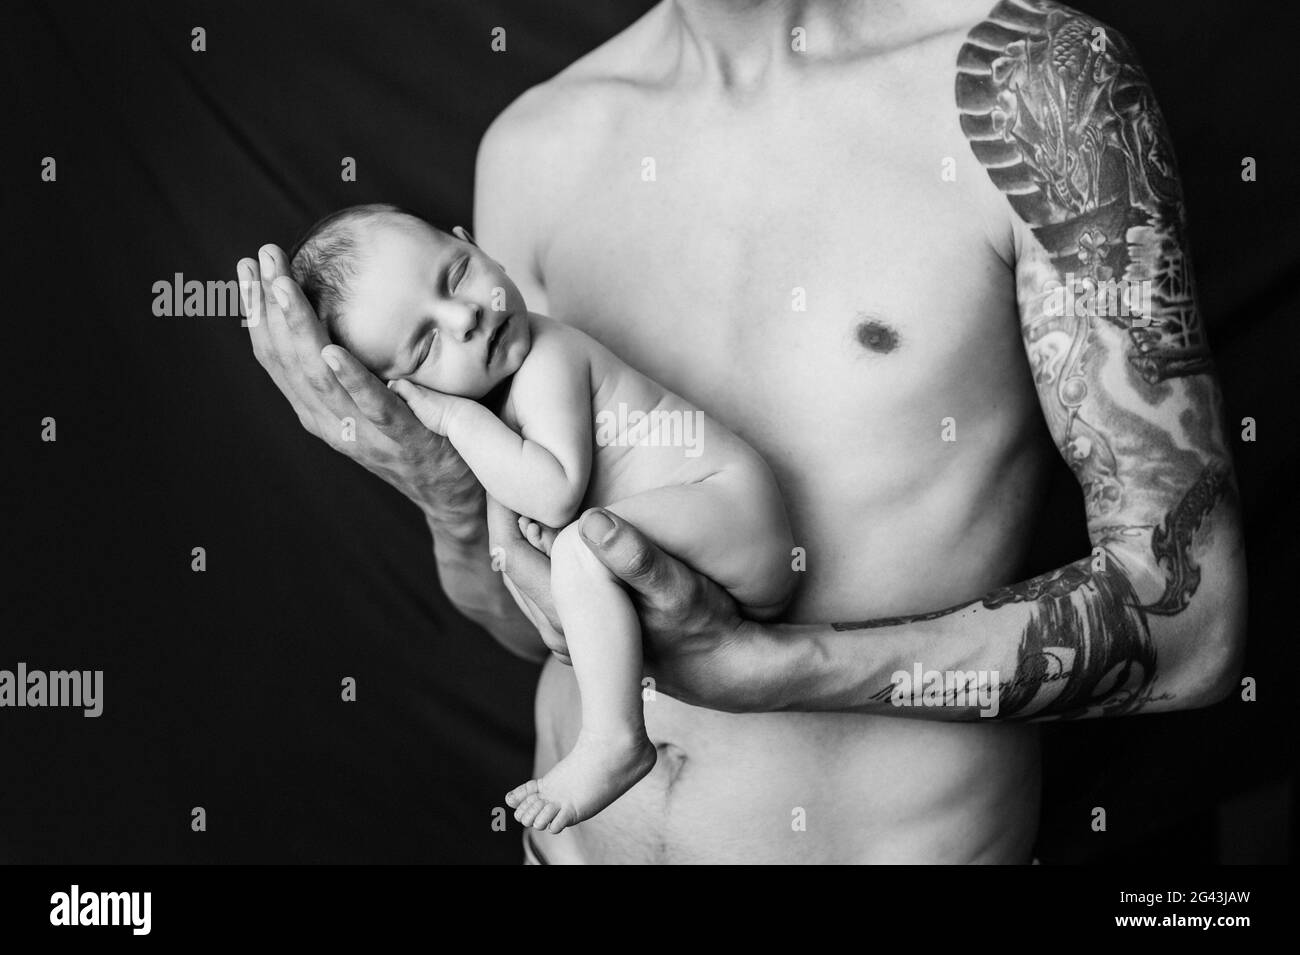 Il padre con il tatuaggio sul braccio tiene il suo neonato su uno sfondo bianco e nero Foto Stock